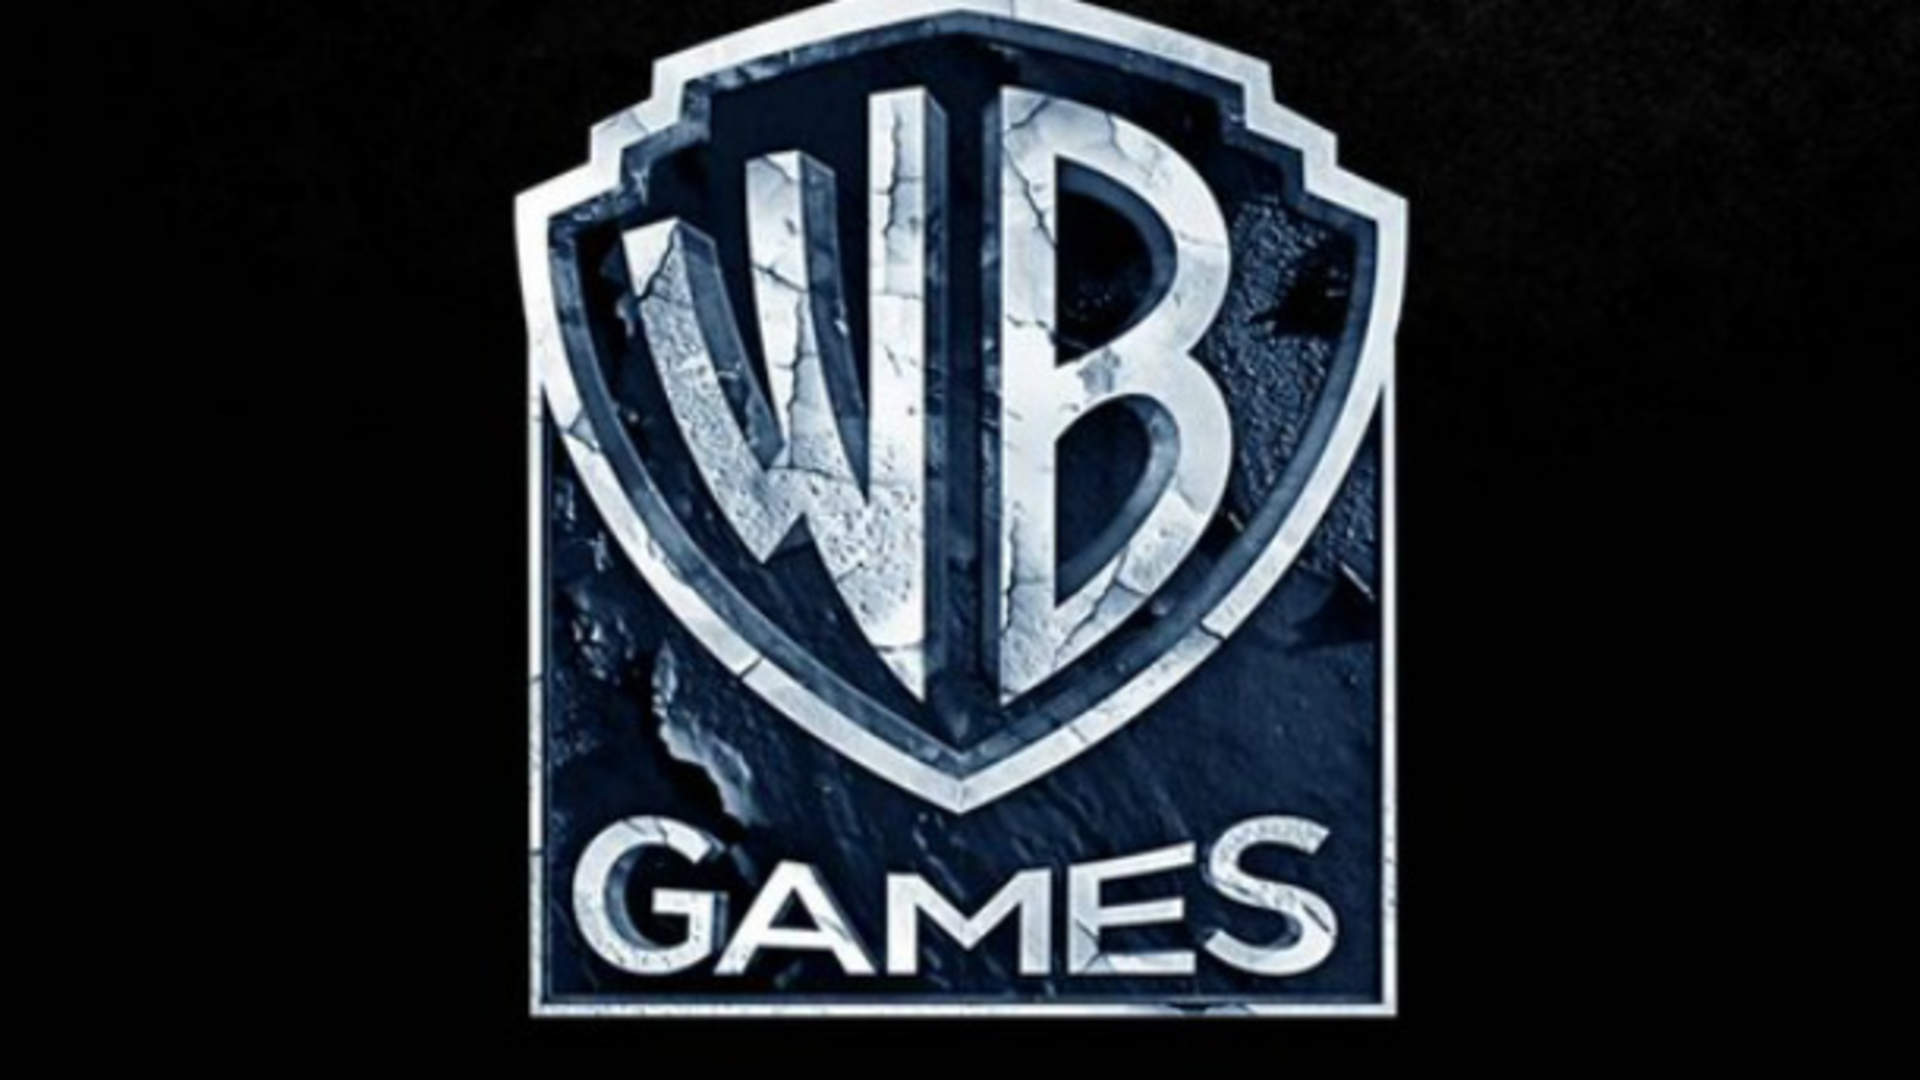 Warner Games trở thành thành viên của Microsoft Game Studios.